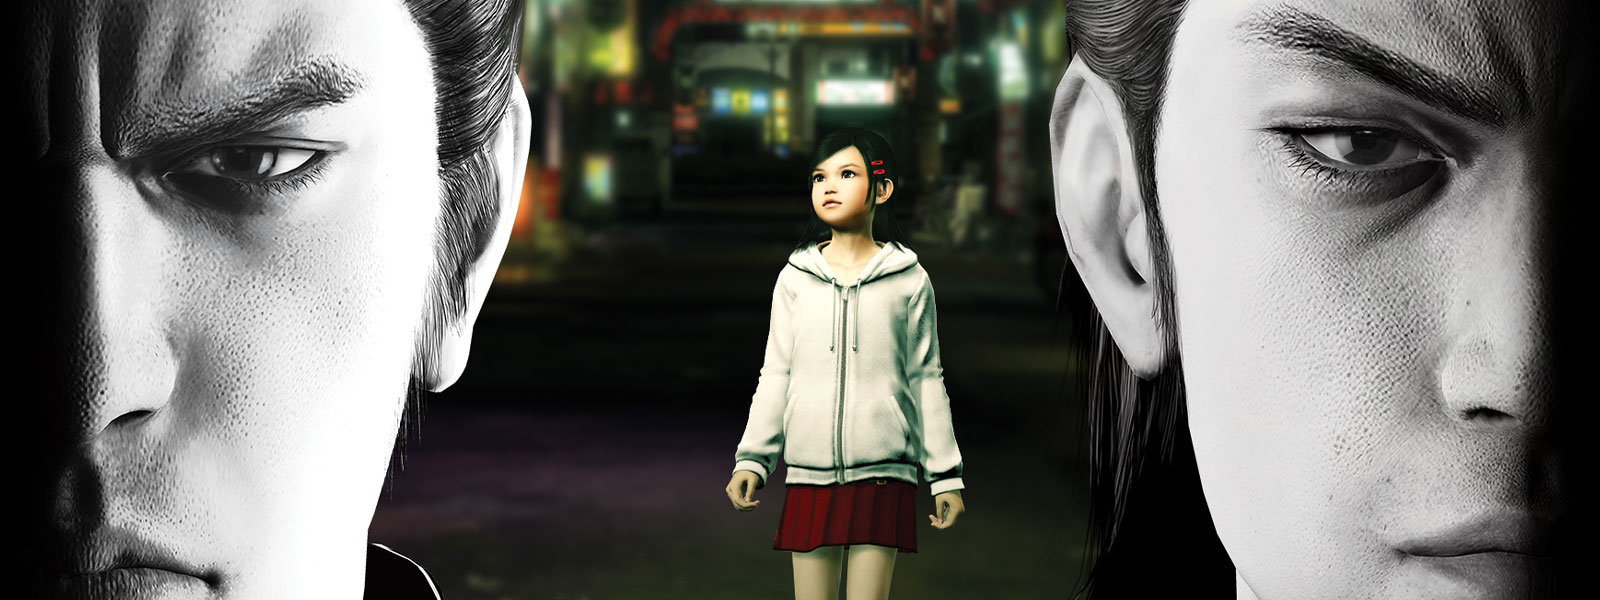 Två Yakuza-karaktärer tittar dystert framför sig med en liten flicka stående i staden bakom dem.